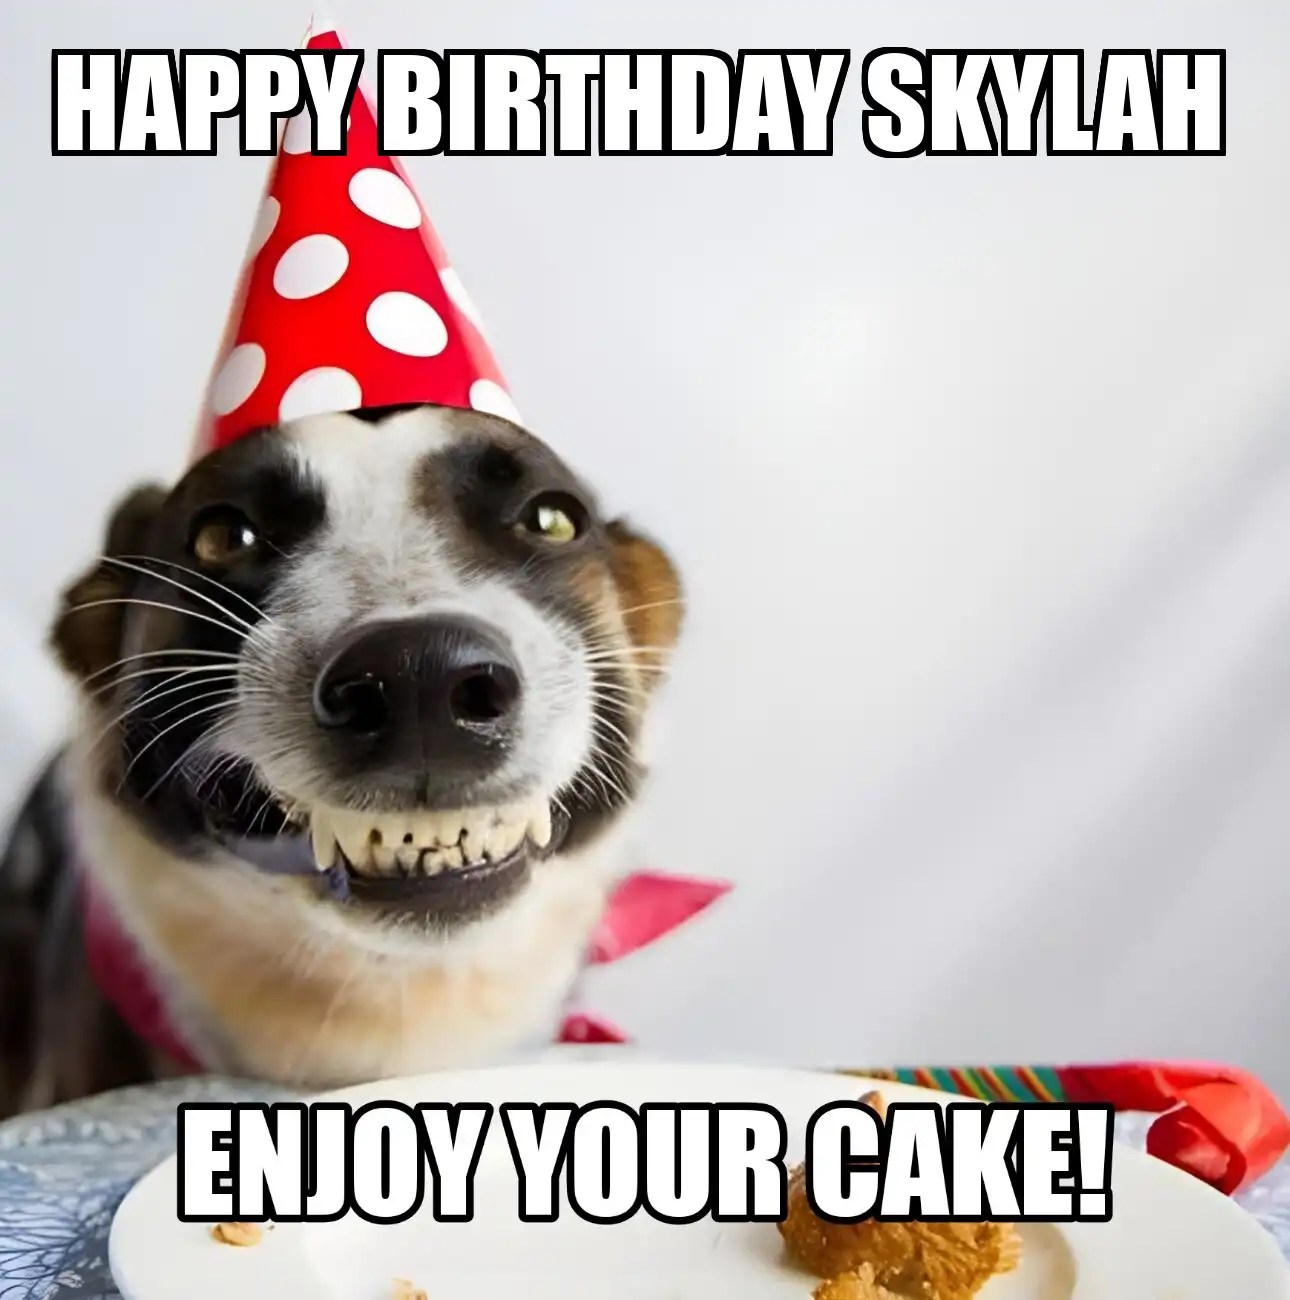 Happy Birthday Skylah Enjoy Your Cake Dog Meme